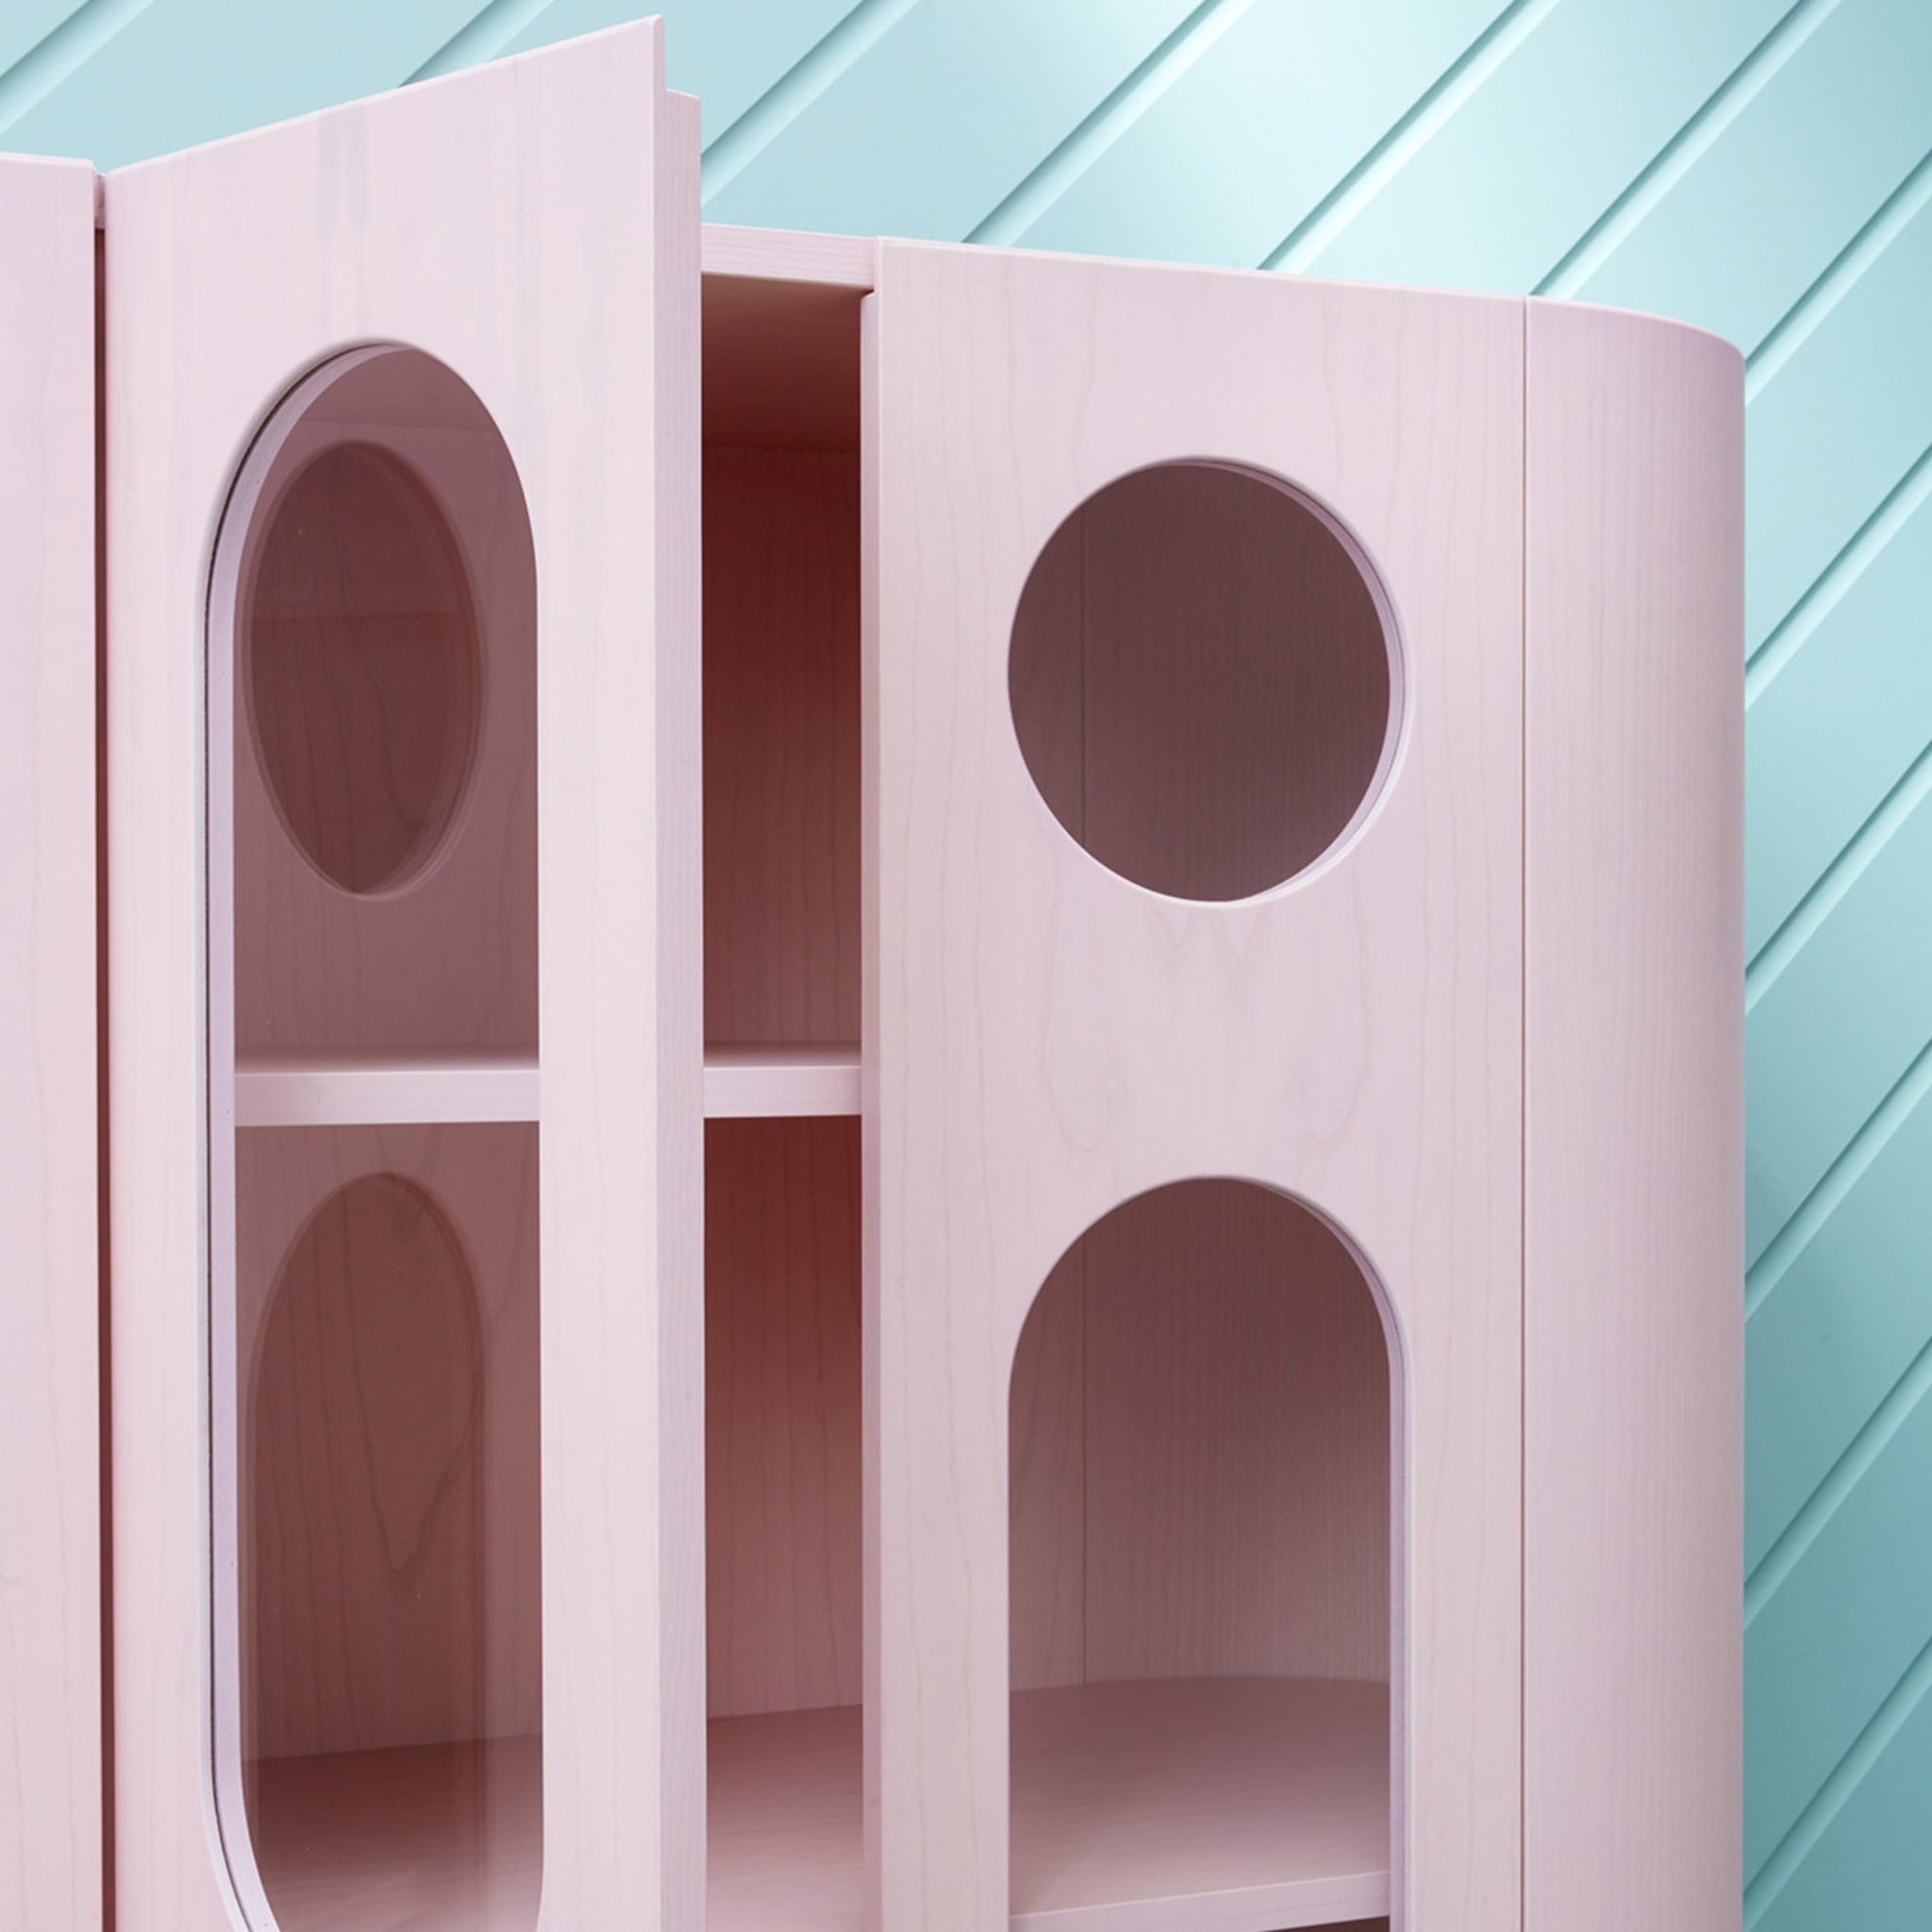 Oblo' A Cabinet by Matteo Zorzenoni - Alternative view 1